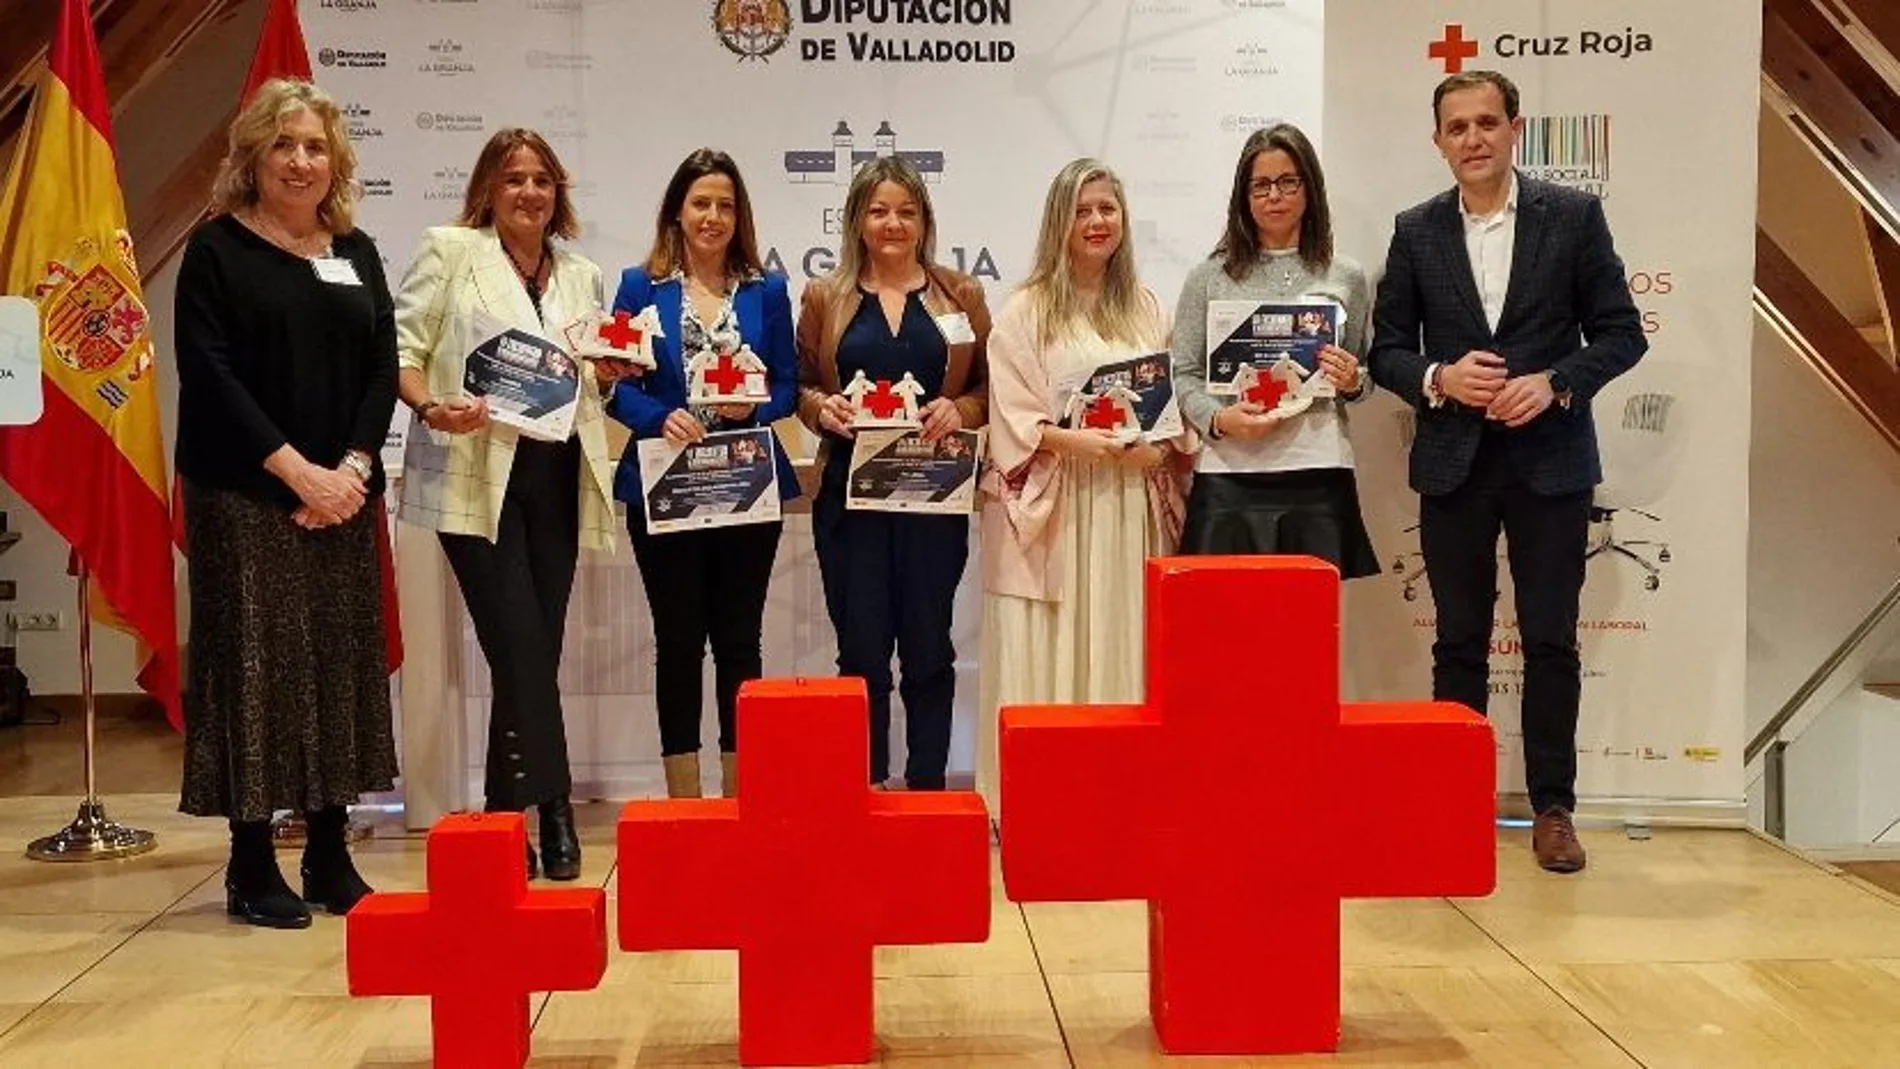 Íscar y Urbón entregan los premios de Cruz Roja en Valladolid que reconoce el compromiso de Ballesol, Recoletas, Vametal, Rio Shopping y Sanitas por su participación en el Plan de Empleo